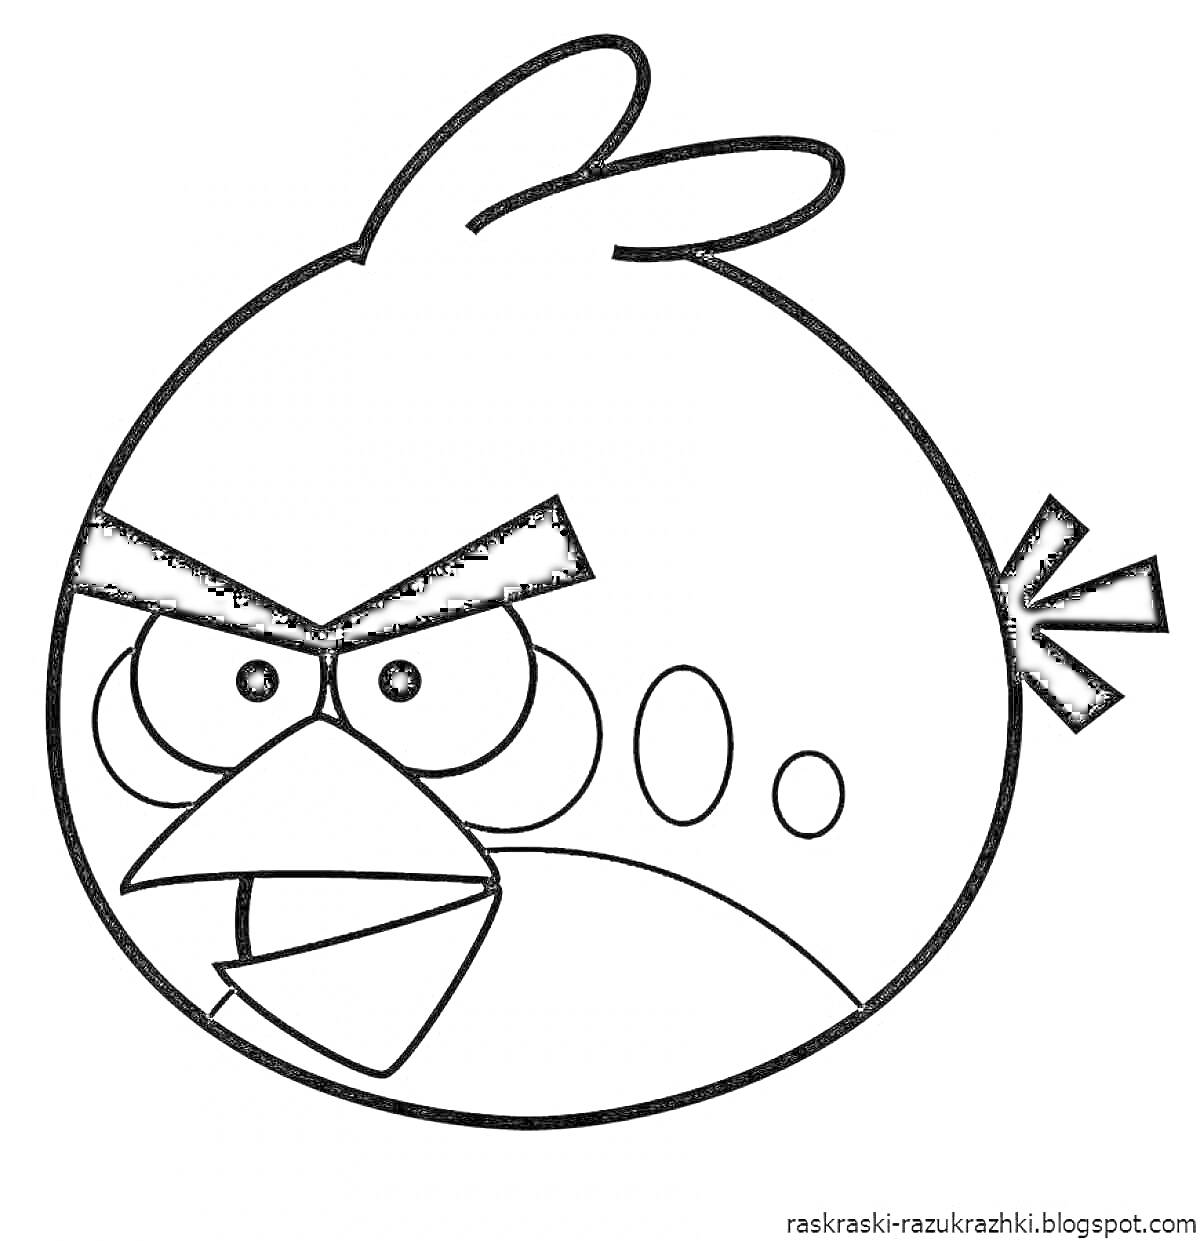 Раскраска с изображением сердитой птицы из игры Энгри Бердз, круглая птица с густыми бровями, глазами, клювом и тремя перьями на хвосте